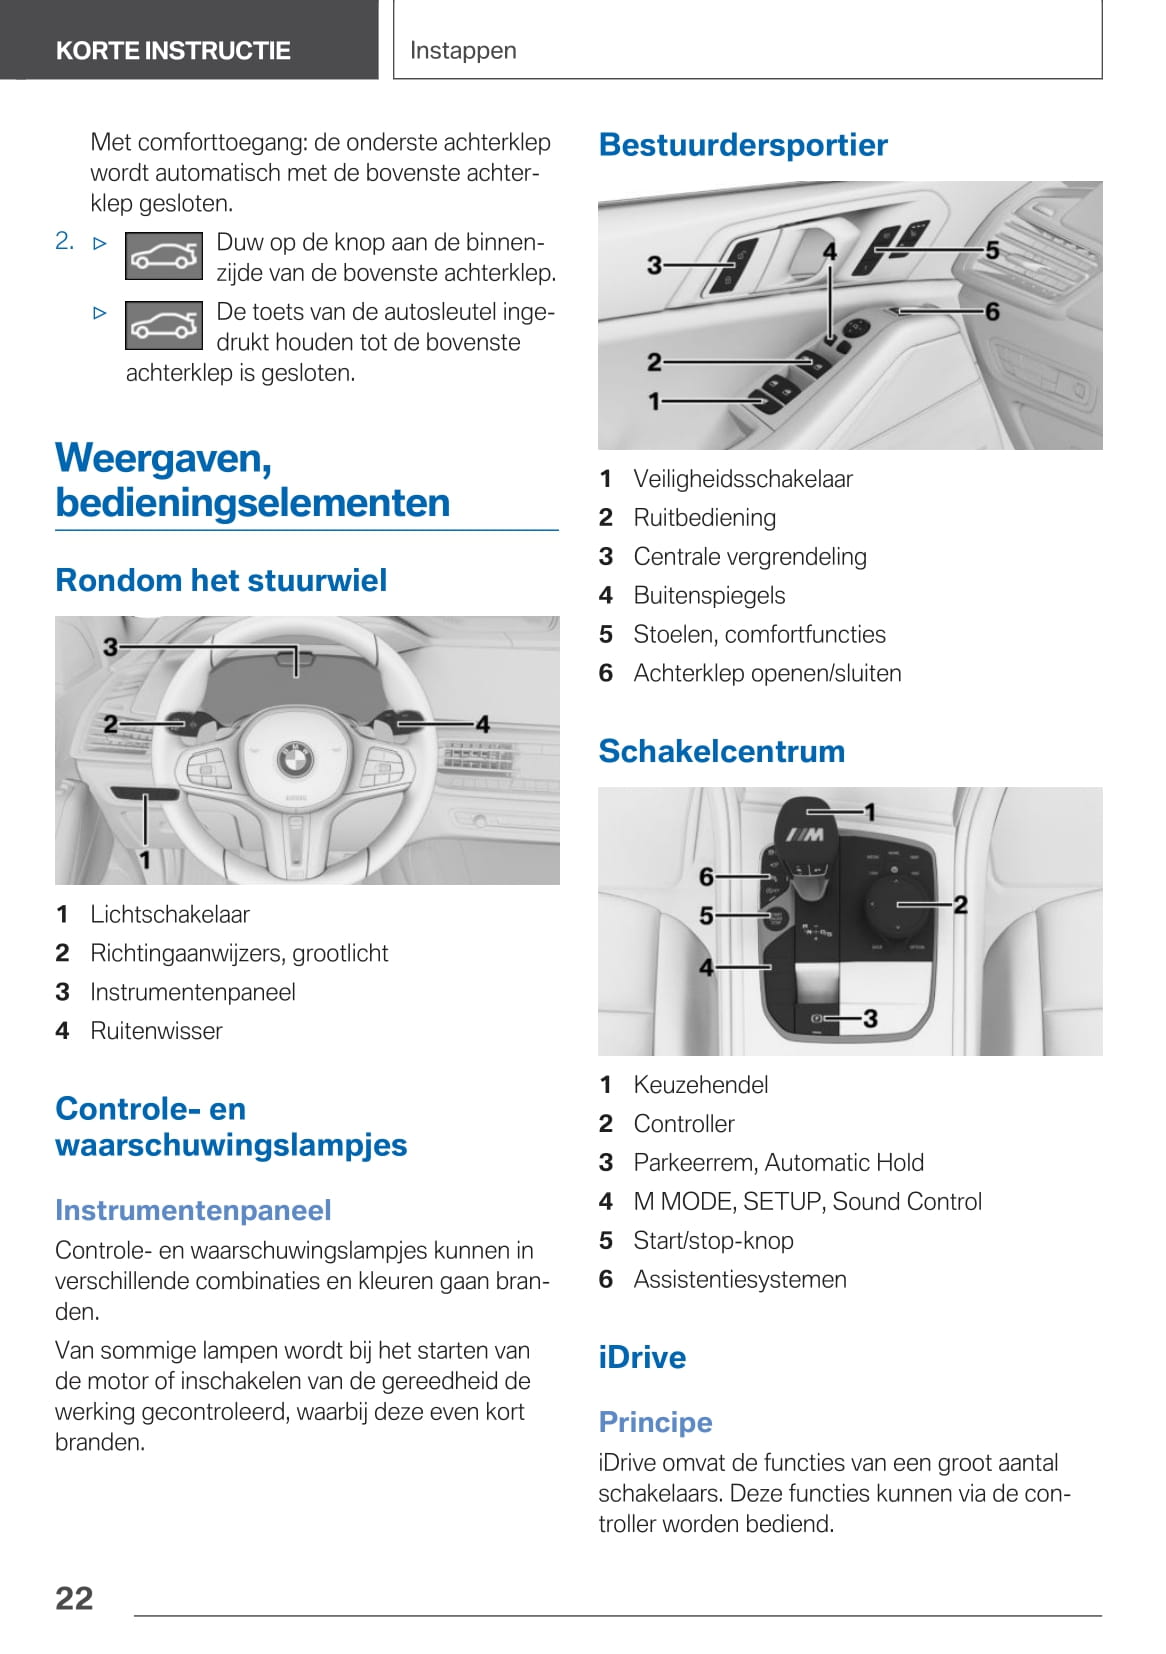 2020 BMW X5 M Bedienungsanleitung | Niederländisch